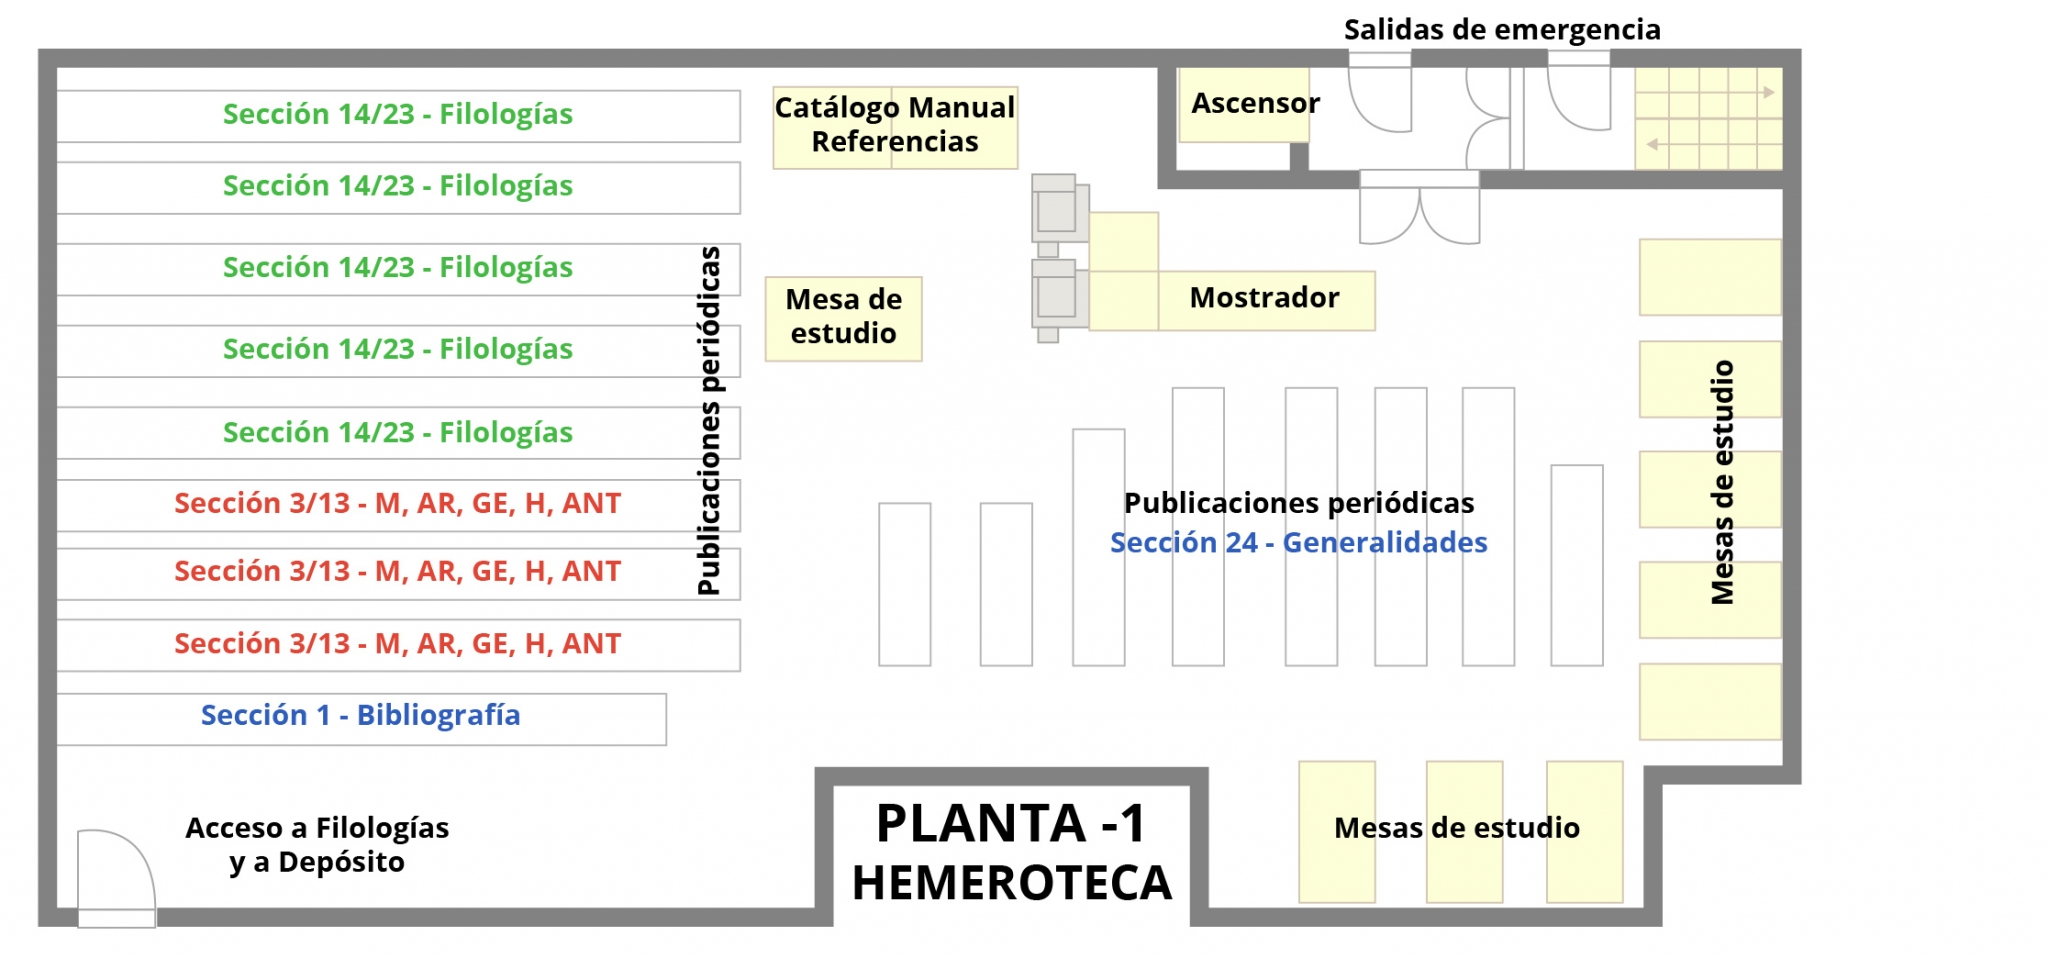 Planta -1 Hemeroteca - Biblioteca Facultad de Filosofía y Letras